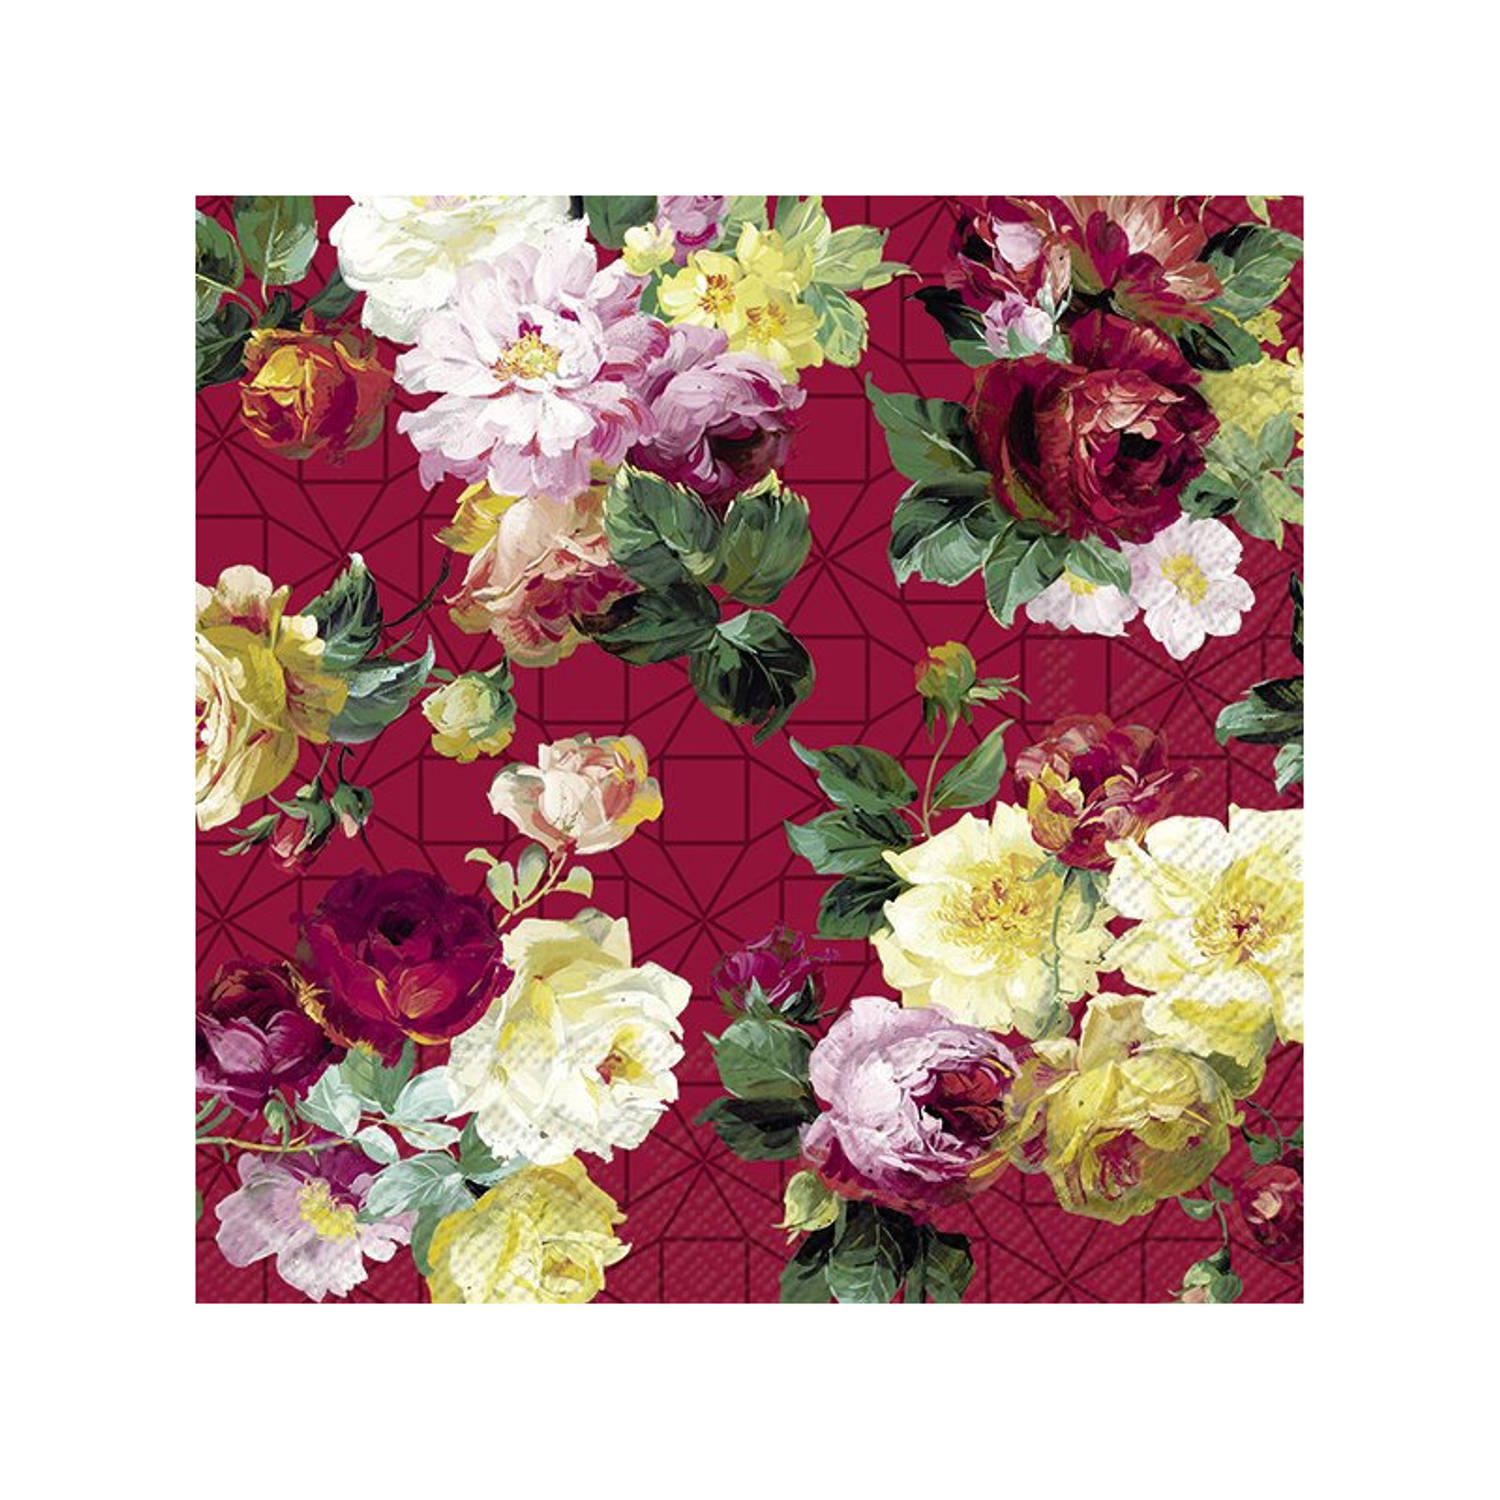 20x Gekleurde 3-laags servetten rozen 33 x 33 cm - Voorjaar/lente bloemen thema